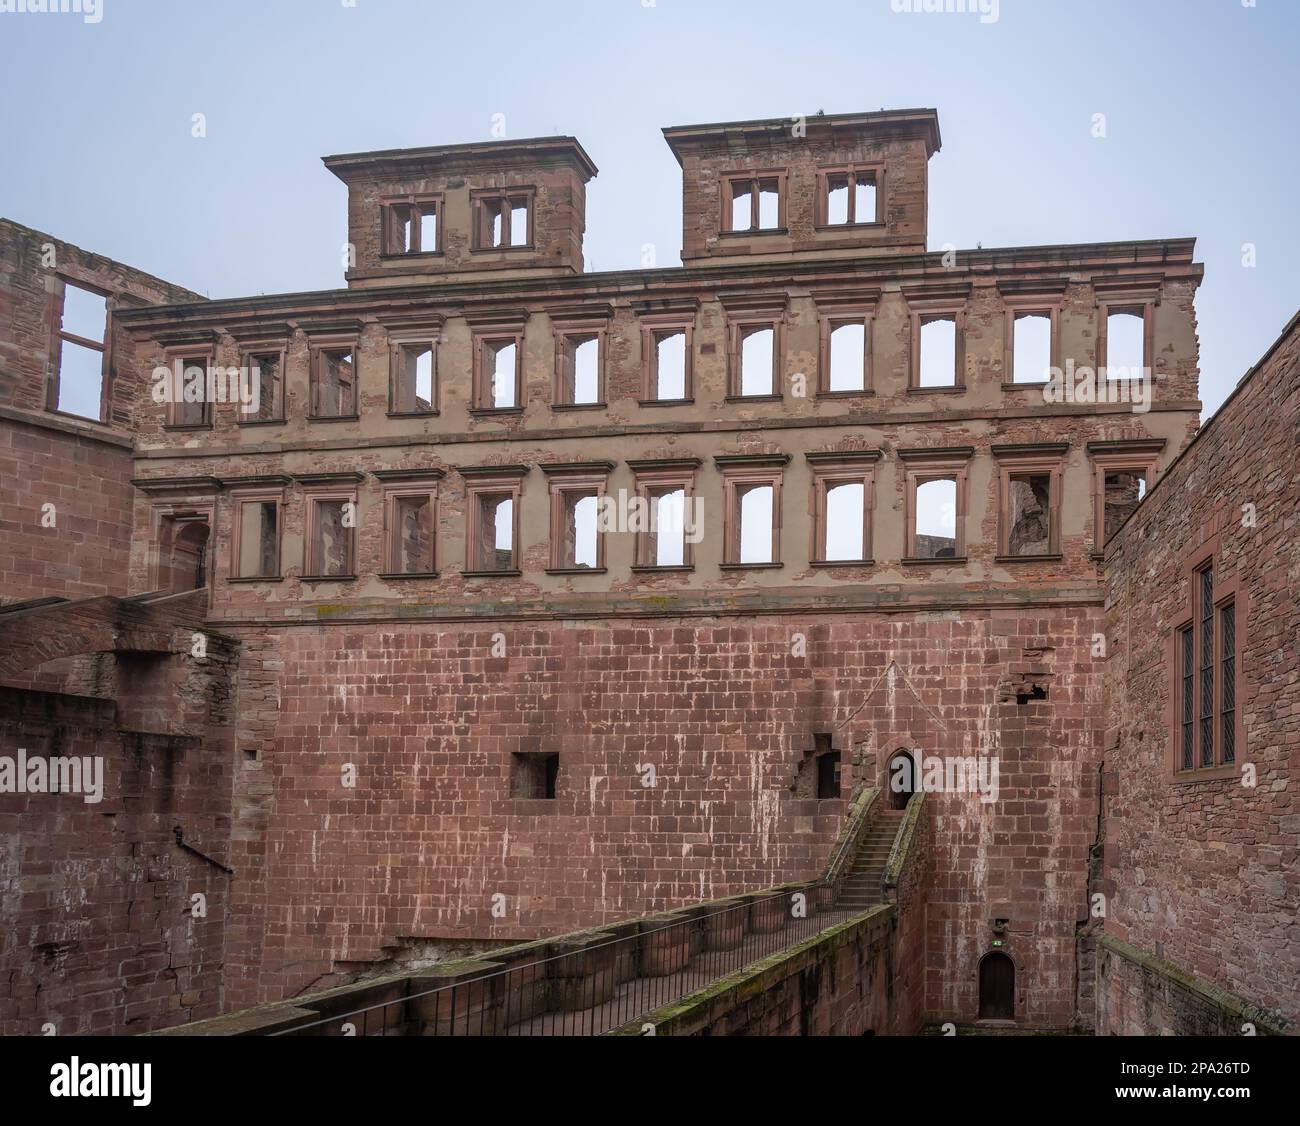 Ala inglesa (Englischer Bau) en el Castillo de Heidelberg - Heidelberg, Alemania Foto de stock